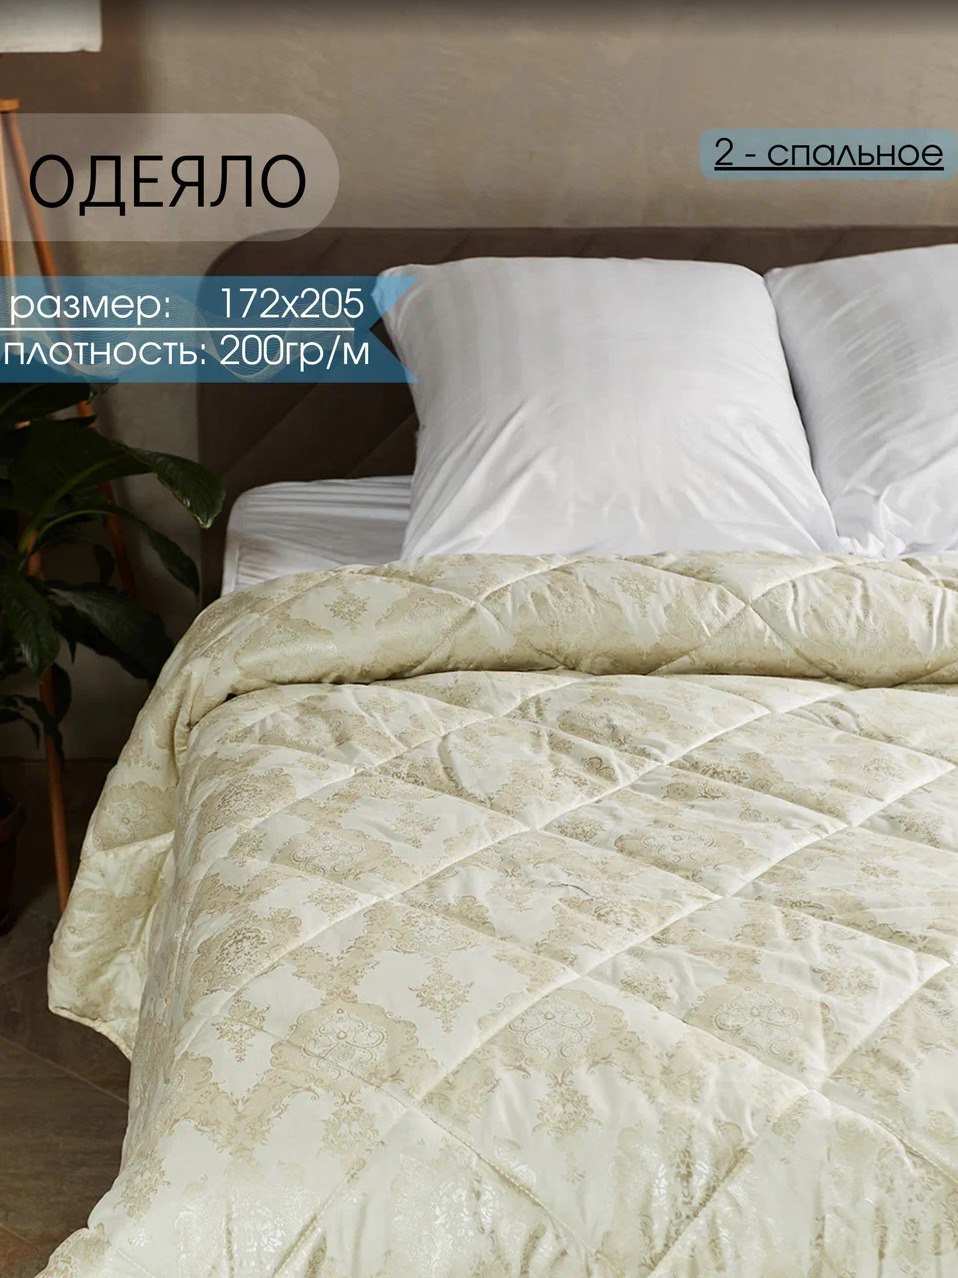 Одеяло Persona Home, 2 спальное 172x205 см, поплекс